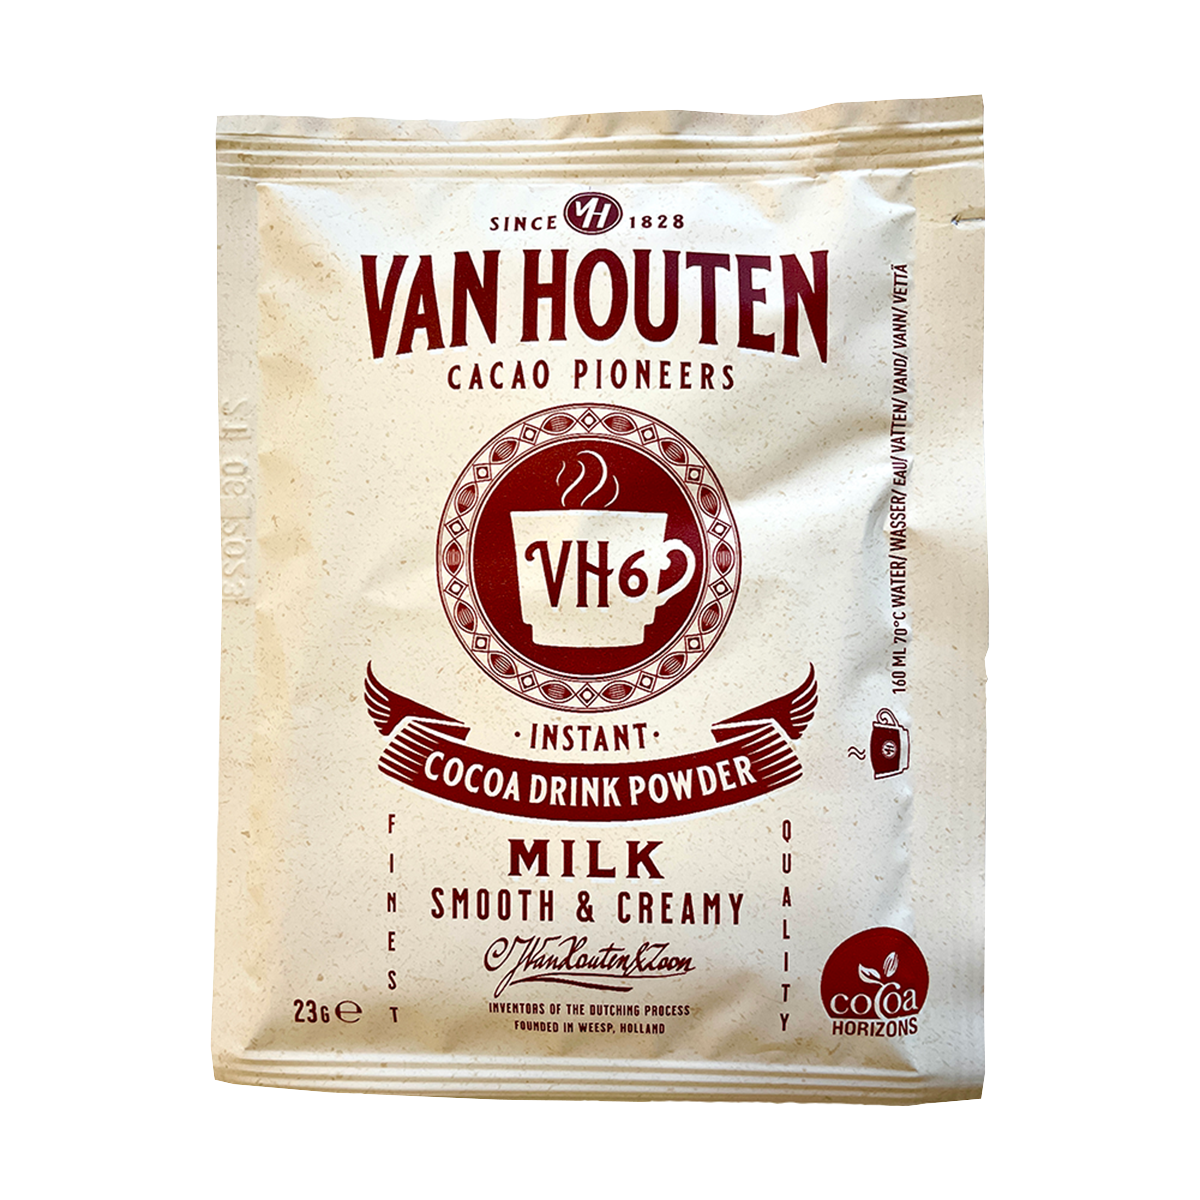 Van Houten kakao 1 stk.